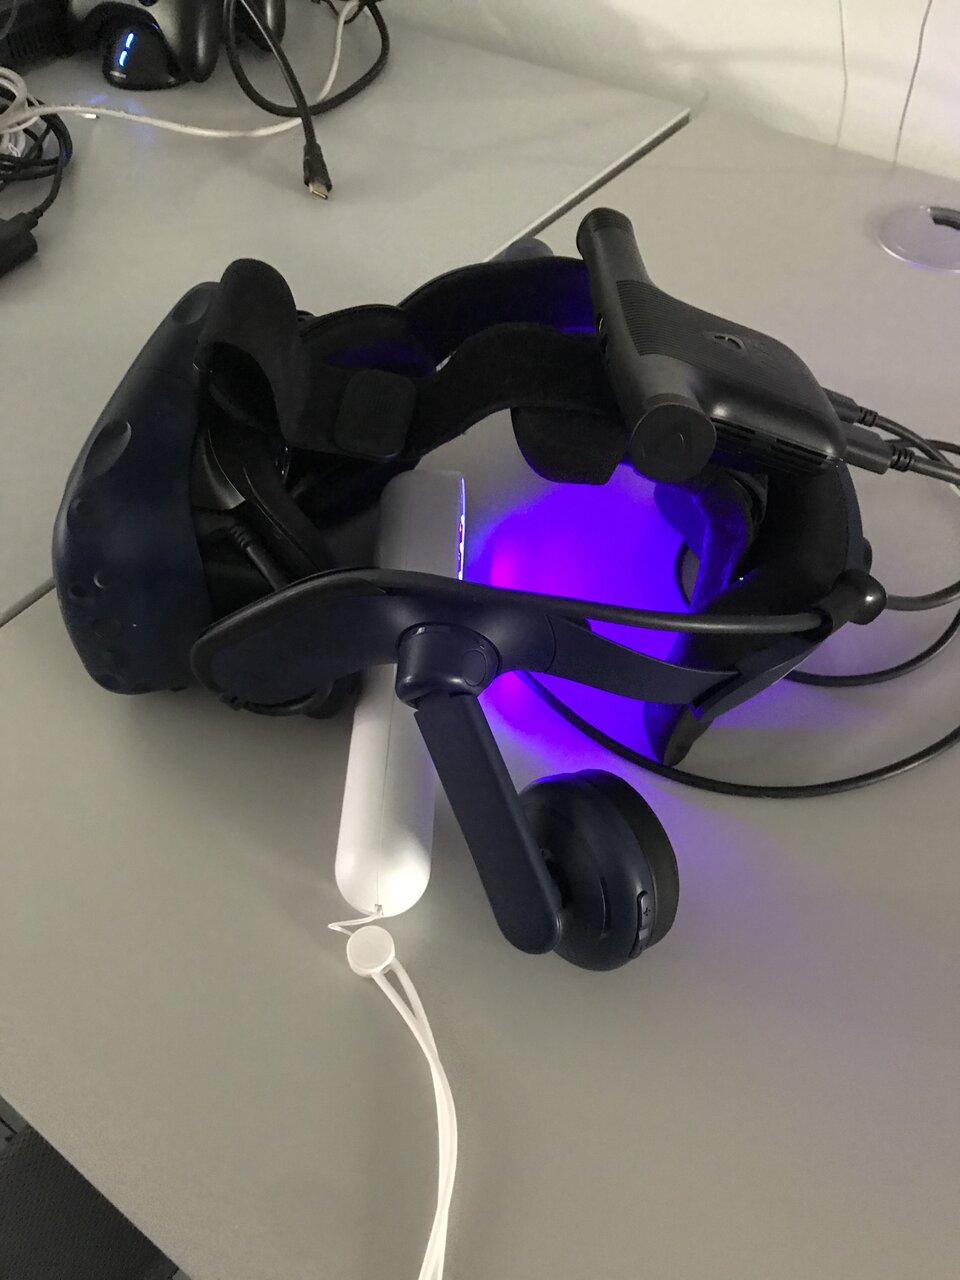 VR-Brillen werden mit tragbaren UV-C-Lampen desinfiziert, bevor sie für das Astronautentraining im EAC zum Einsatz kommen